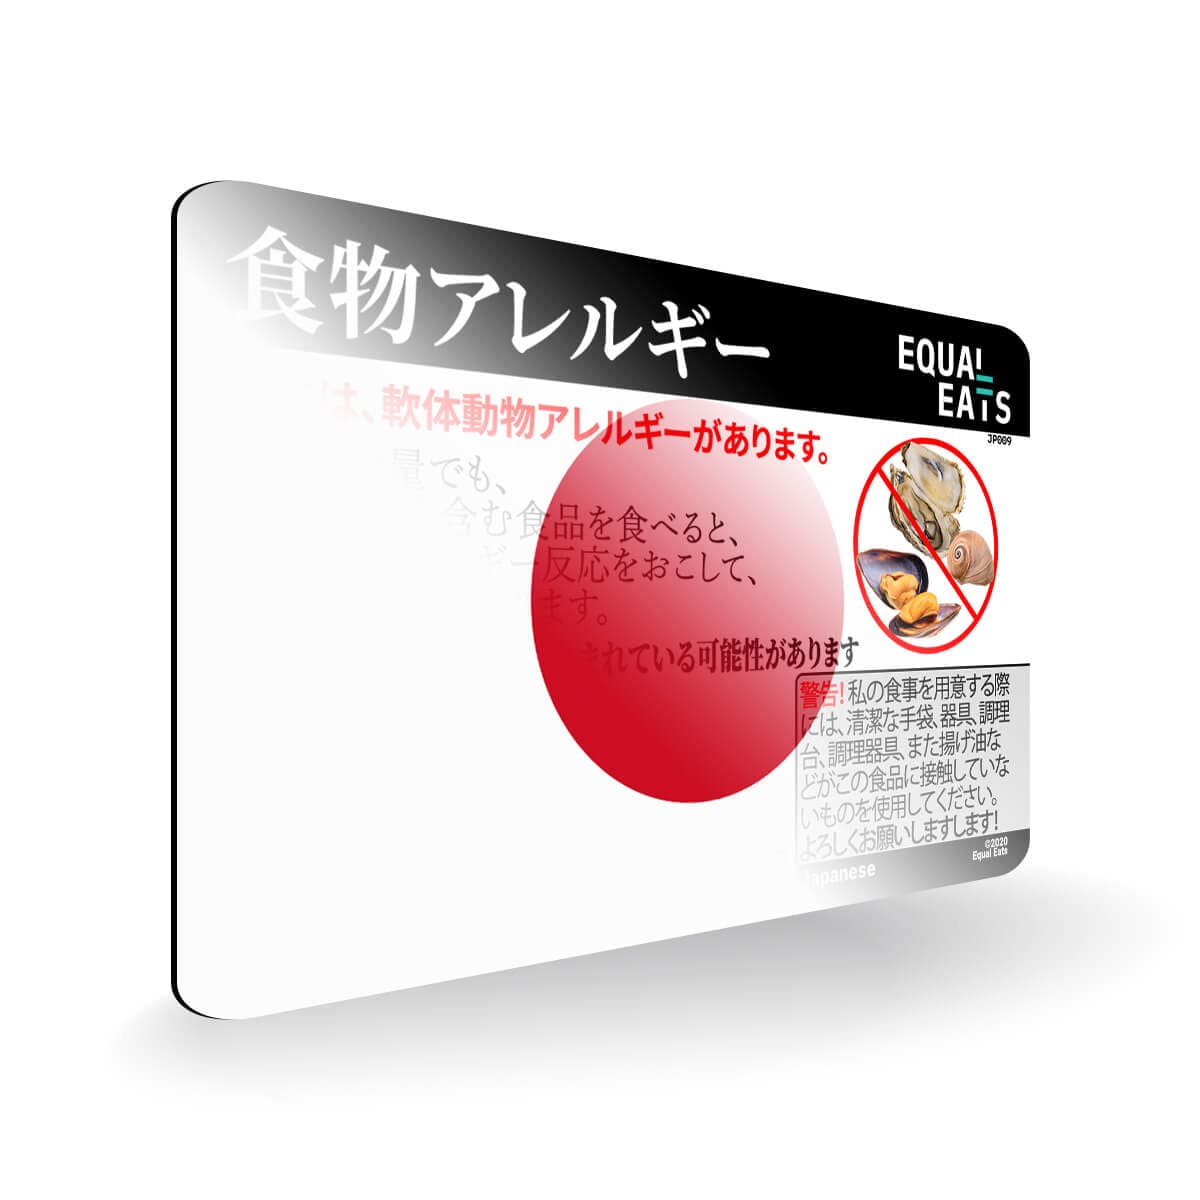 Mollusk Allergy in Japanese. Mollusk Allergy Card for Japan